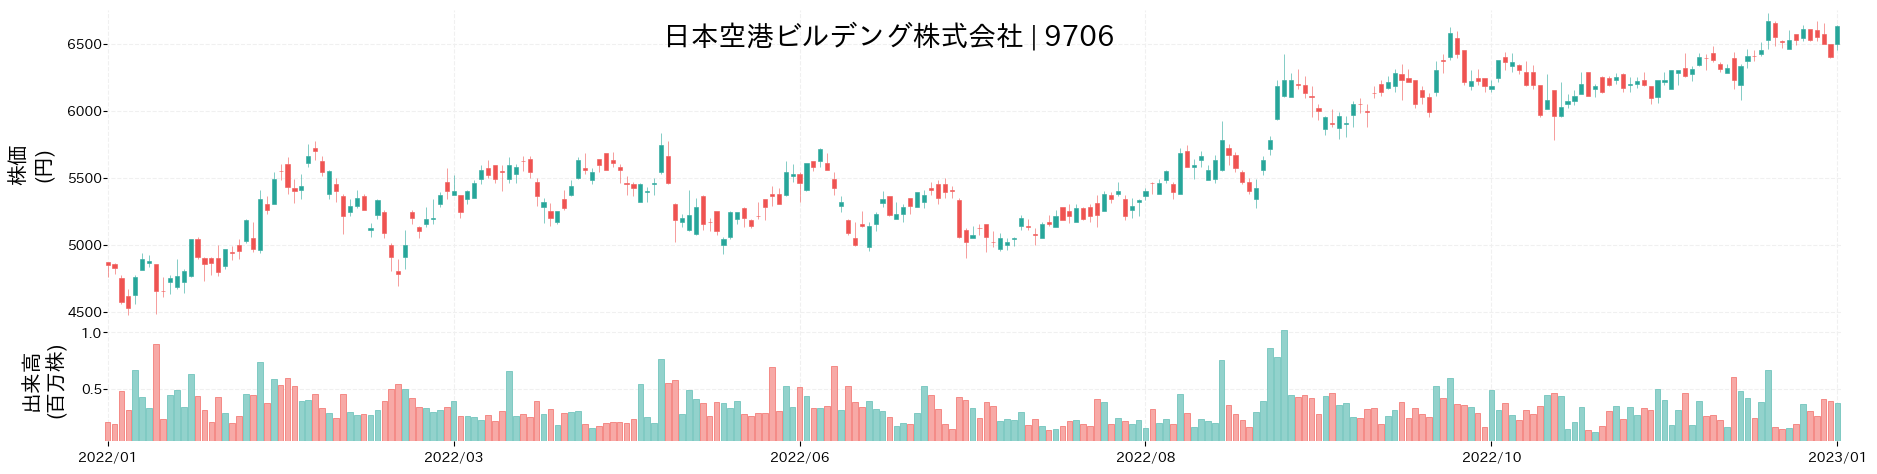 日本空港ビルデングの株価推移(2022)